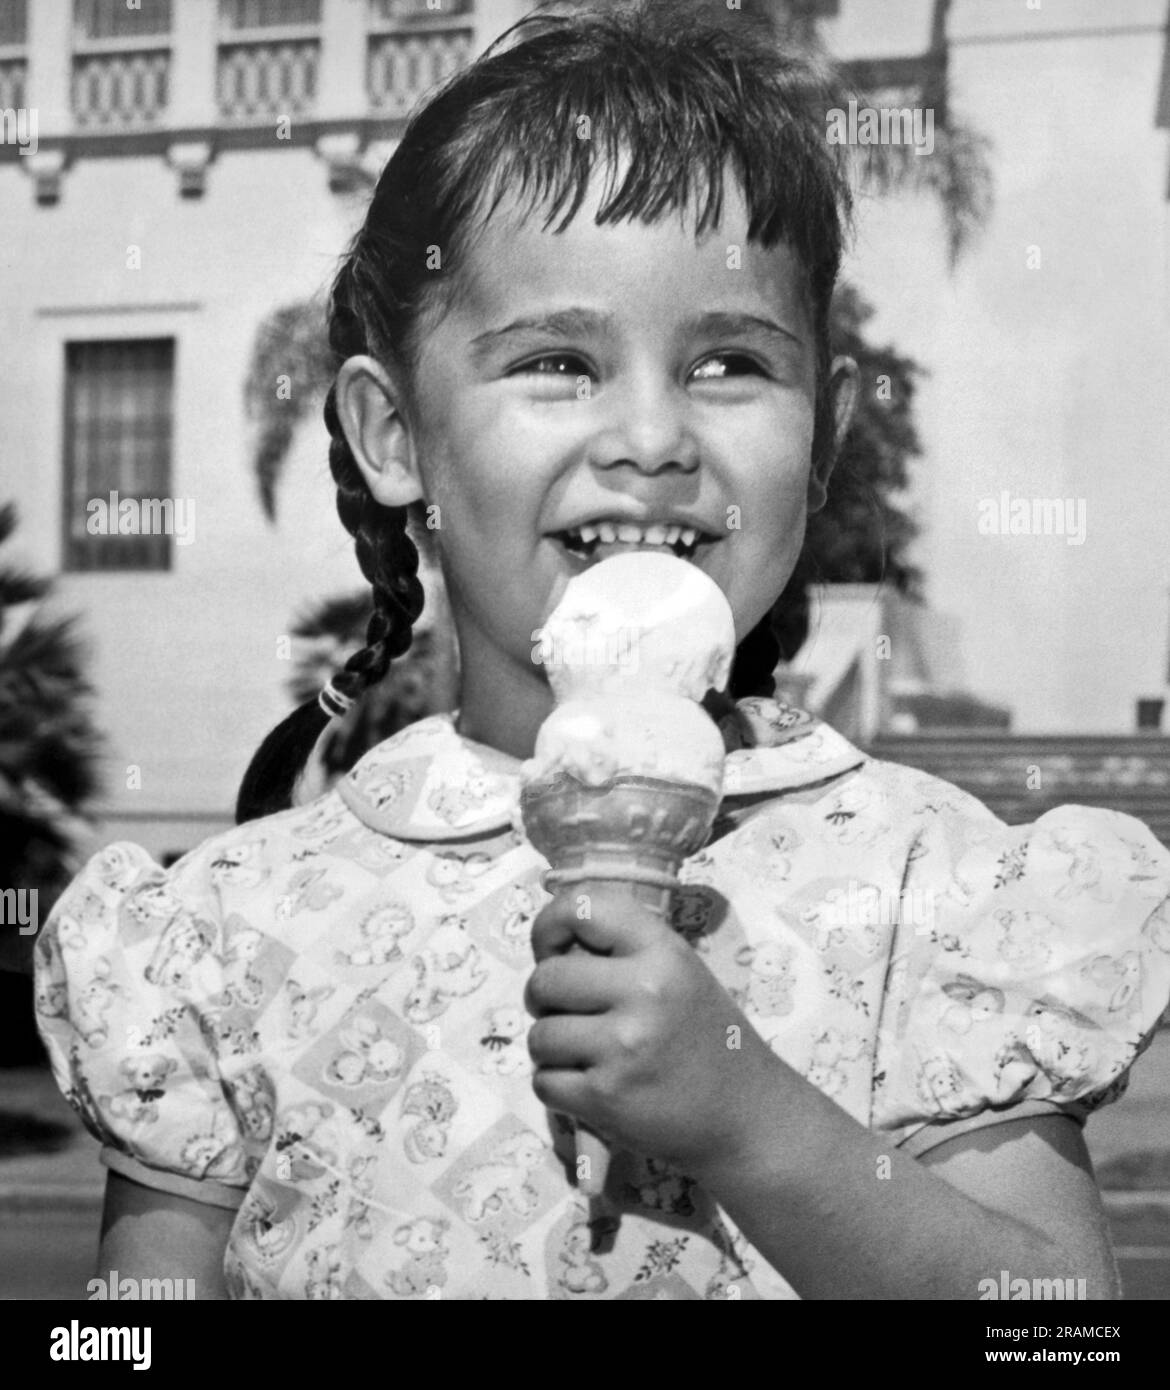 Kalifornien: ca. 1948. Ein lächelndes, junges Mädchen mit Zöpfen isst an einem warmen Sommertag gerne ein Doppel-Dip-Eis. Stockfoto